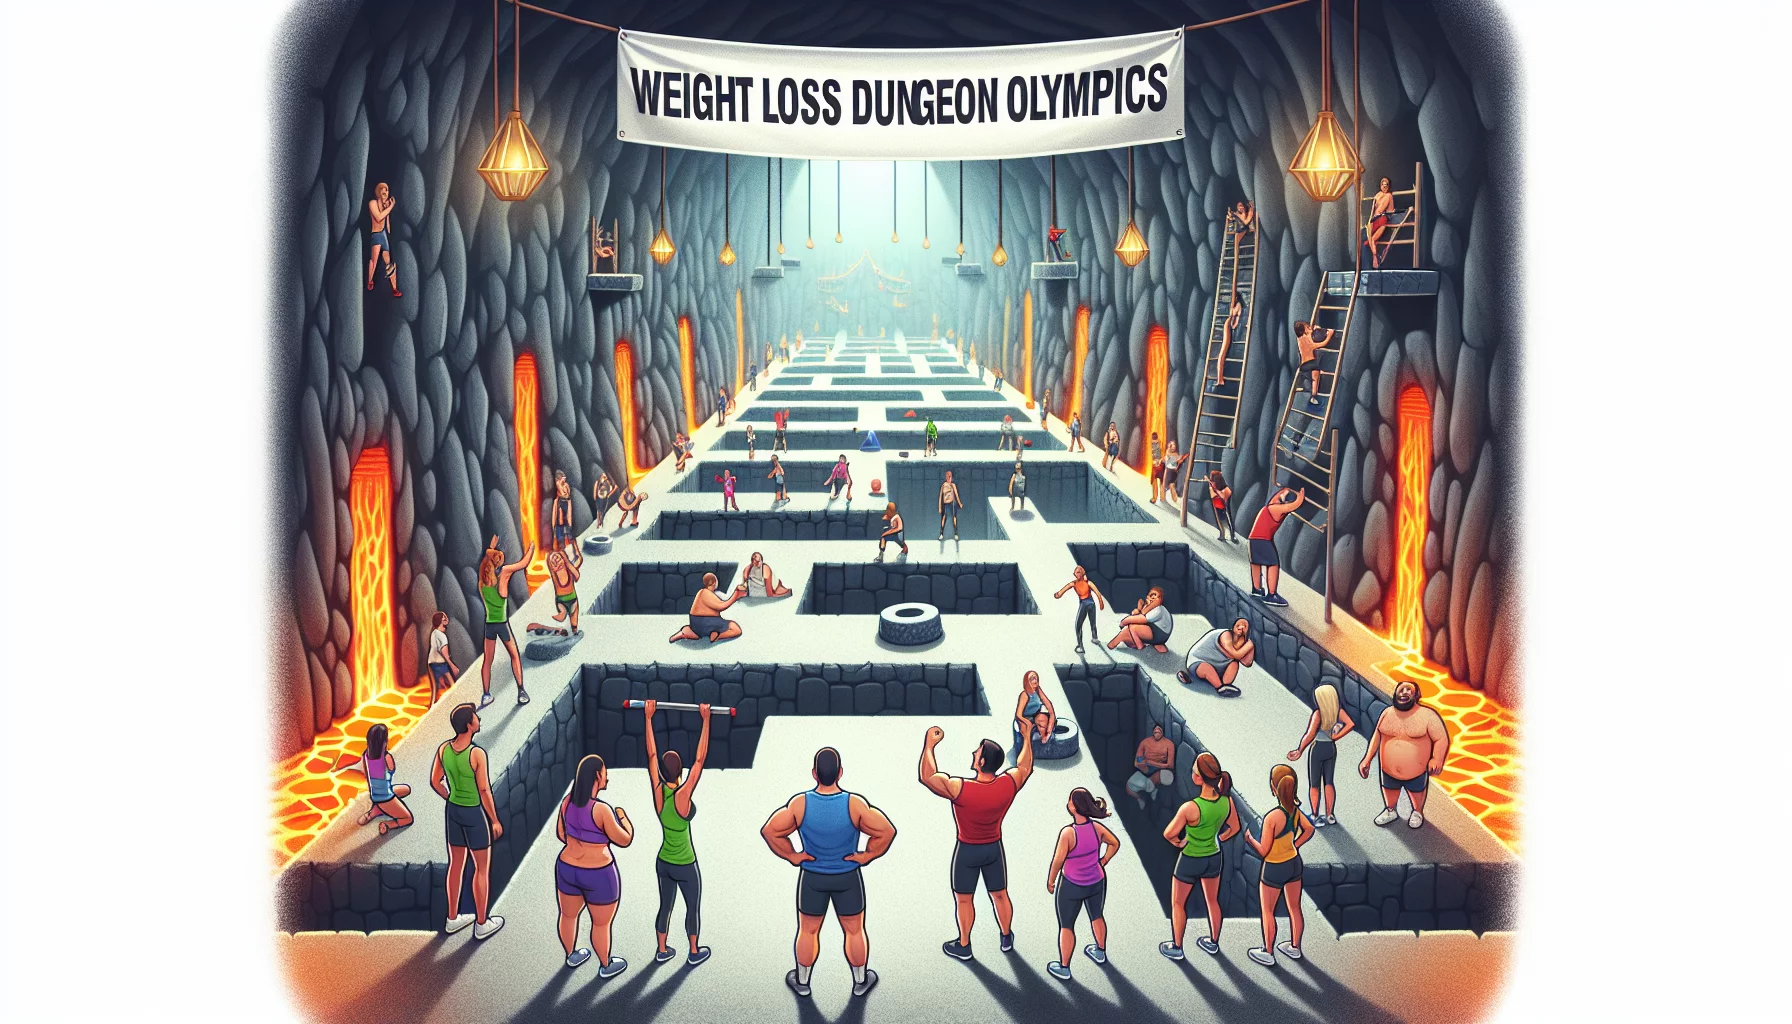 Olympiades du Donjon de la Perte de Poids: Surmontez les obstacles et perdez du poids dans un esprit de compétition amicale.